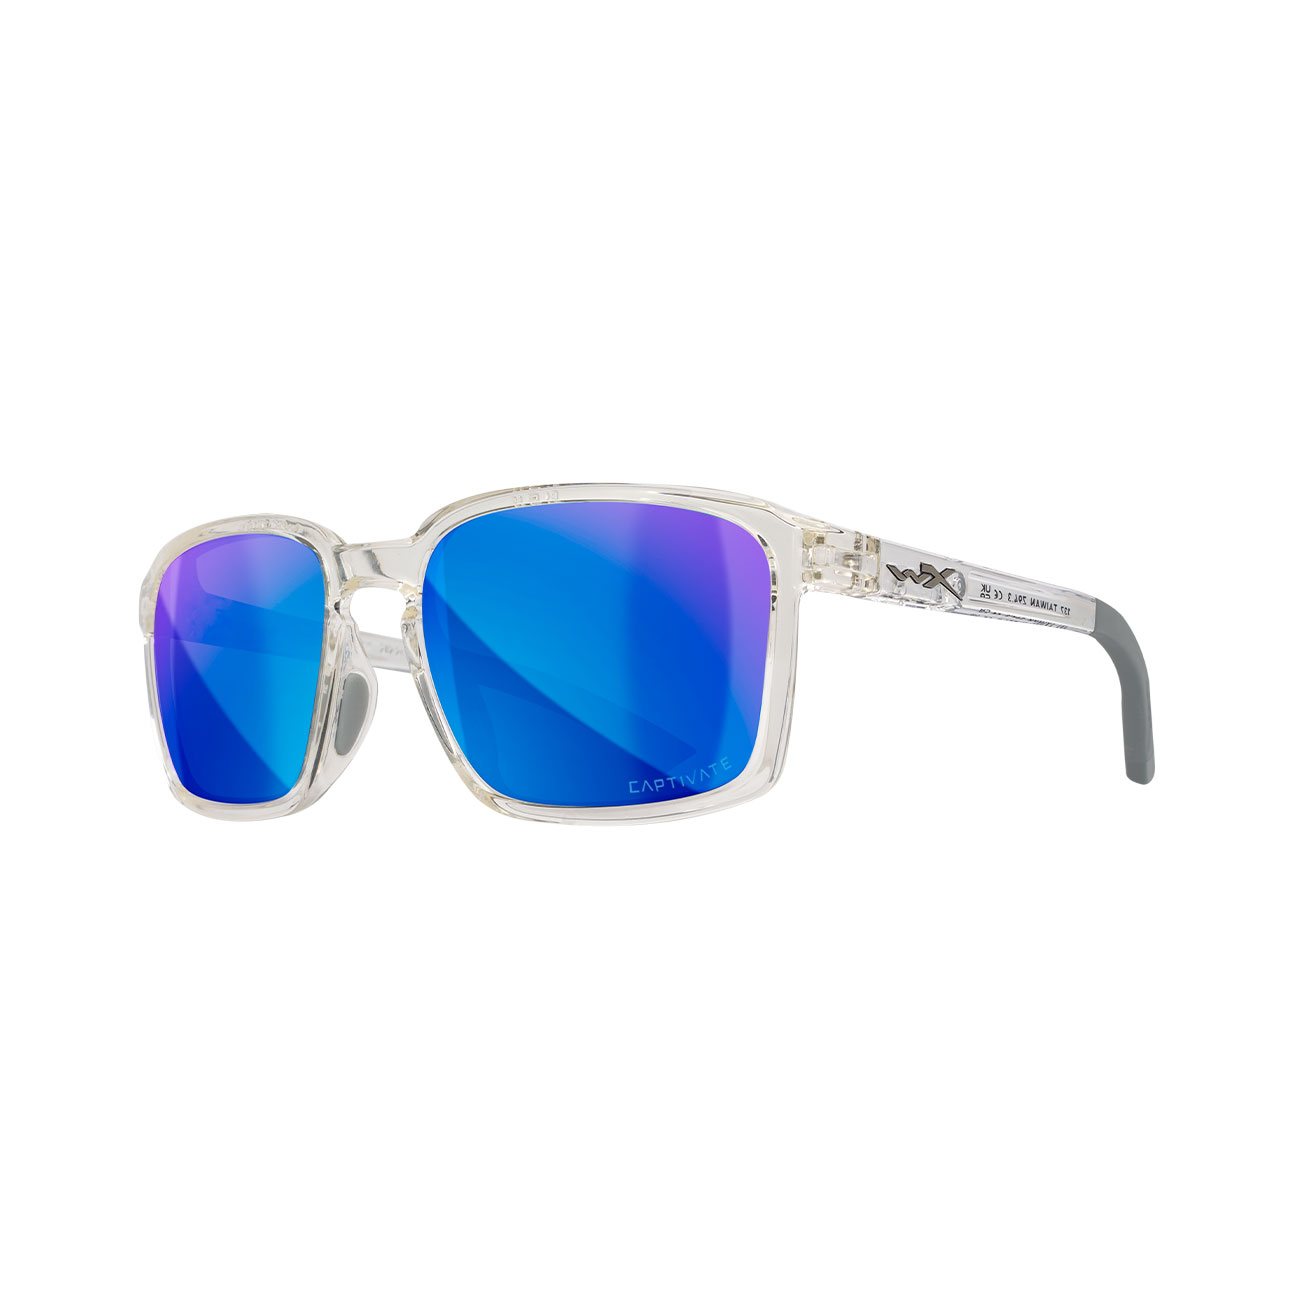 Wiley X Sonnenbrille Ovation Captivate matt transparent grau Glser blau verspiegelt polarisiert inkl. Brillenetui und Seitensch